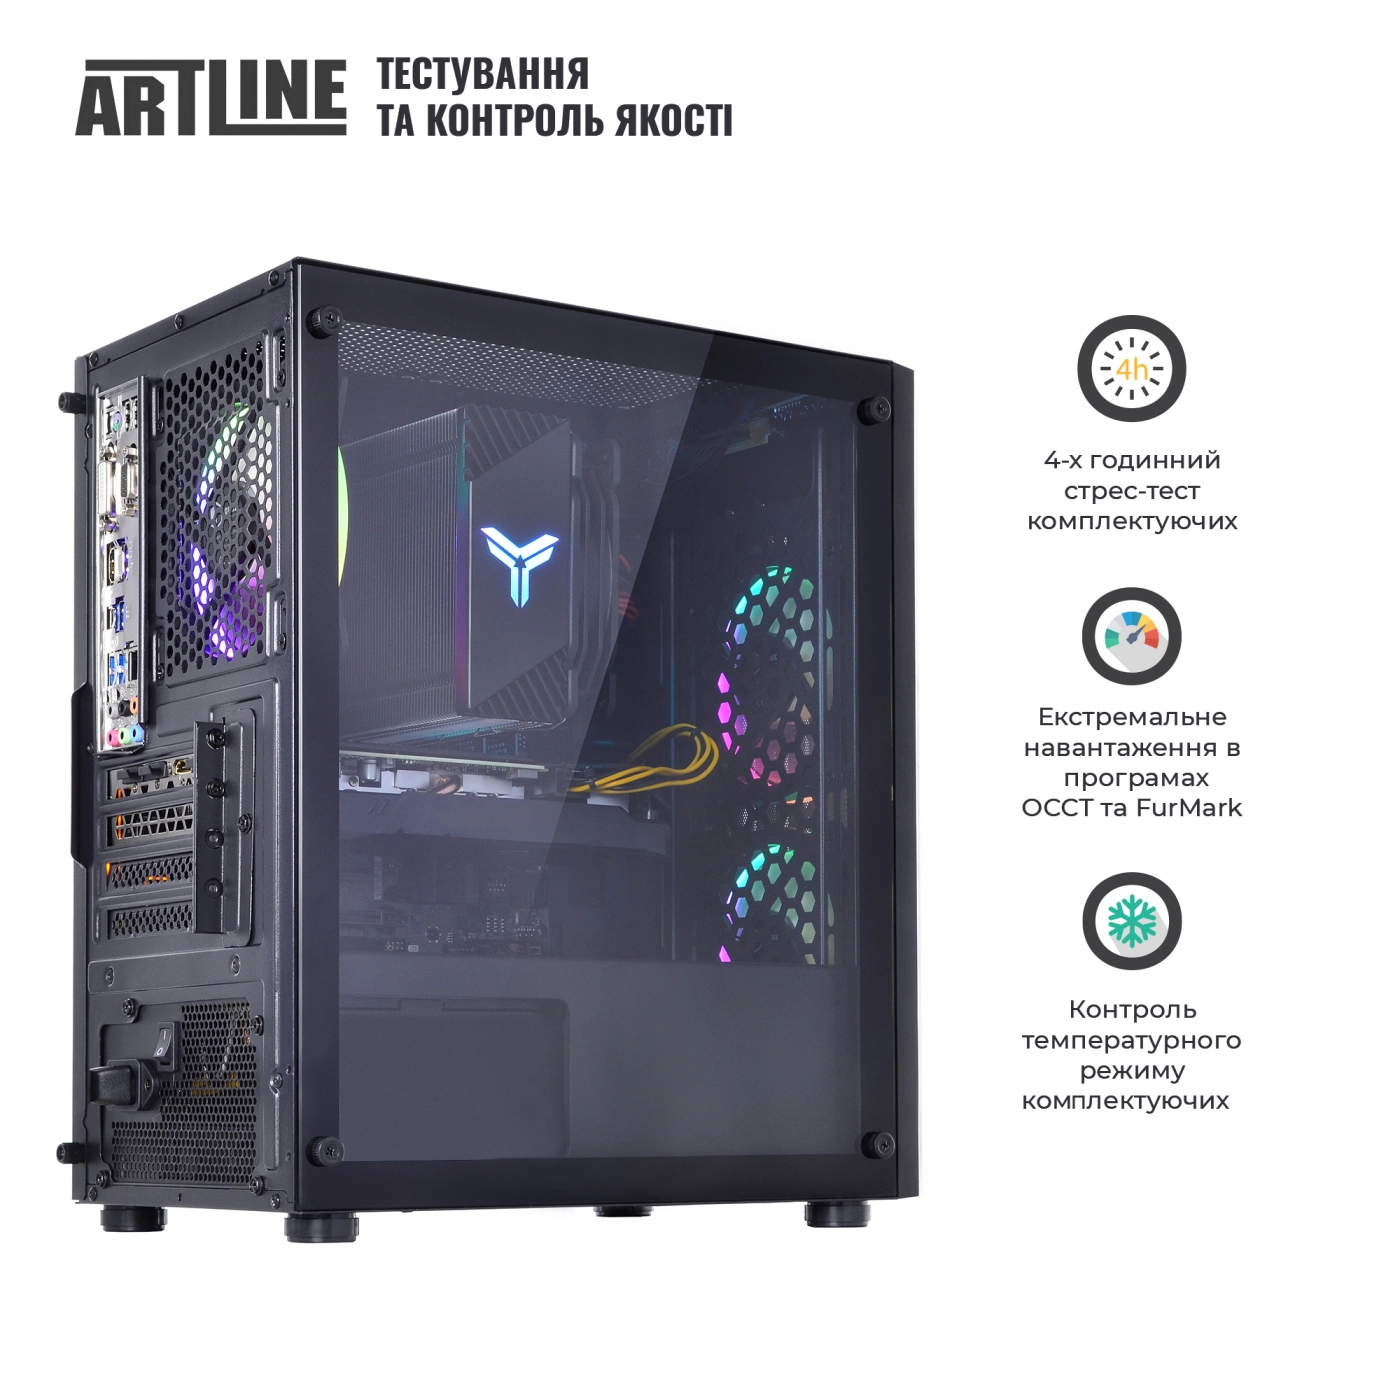 Купить Компьютер ARTLINE Gaming X71v48 - фото 9